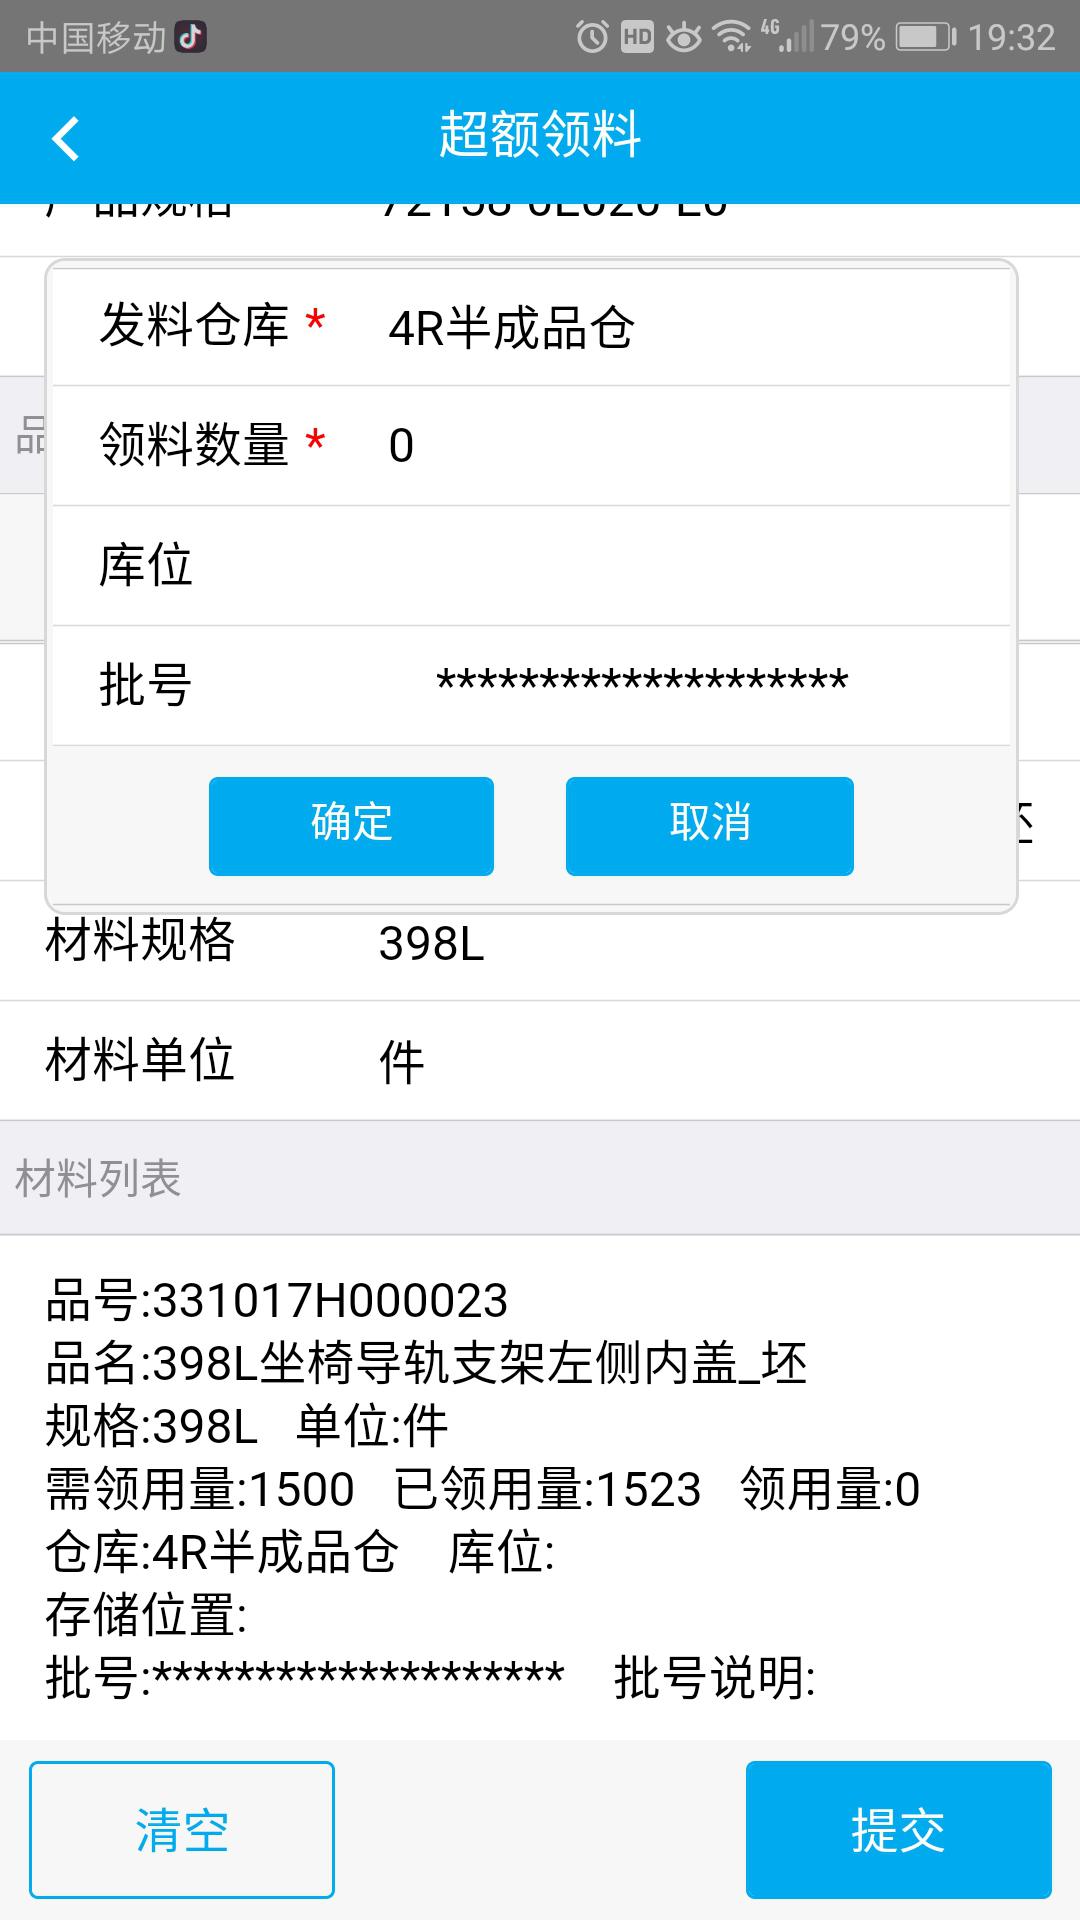 广州维高集团有限公司--鼎捷易飞ERP条码集成移动应用解决方案